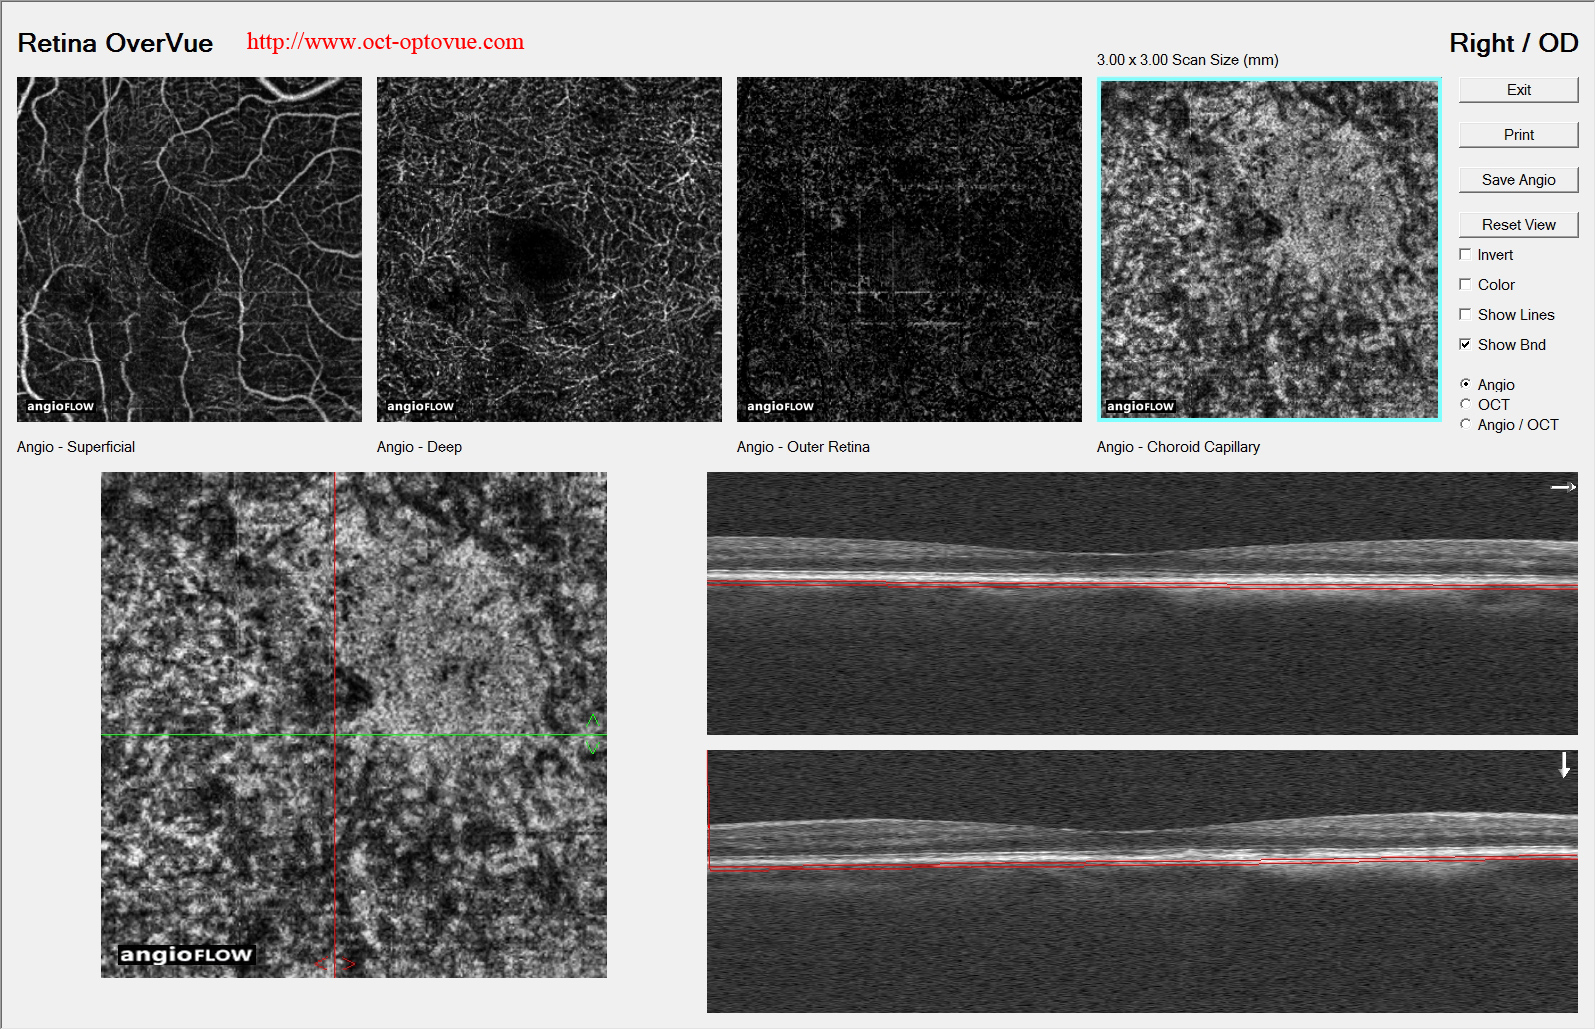 nevus-choroidal retina angio-oct